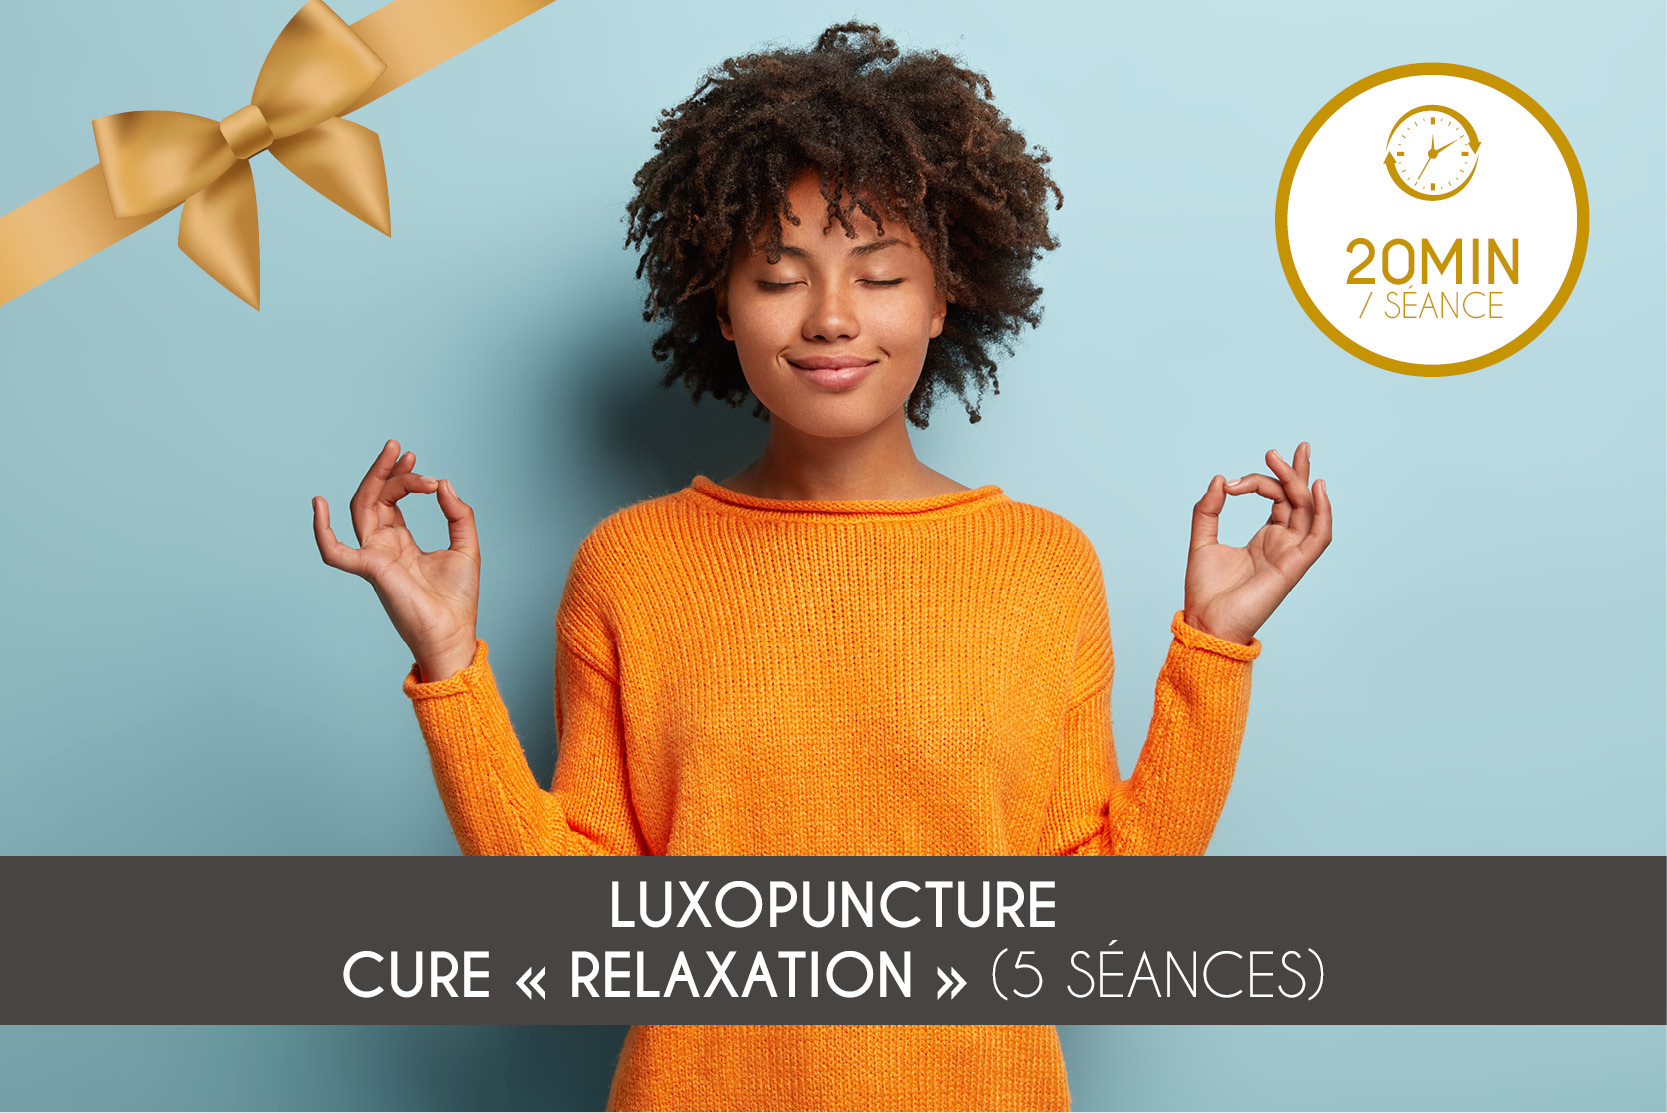 Cure "Relaxation" (5 séances)